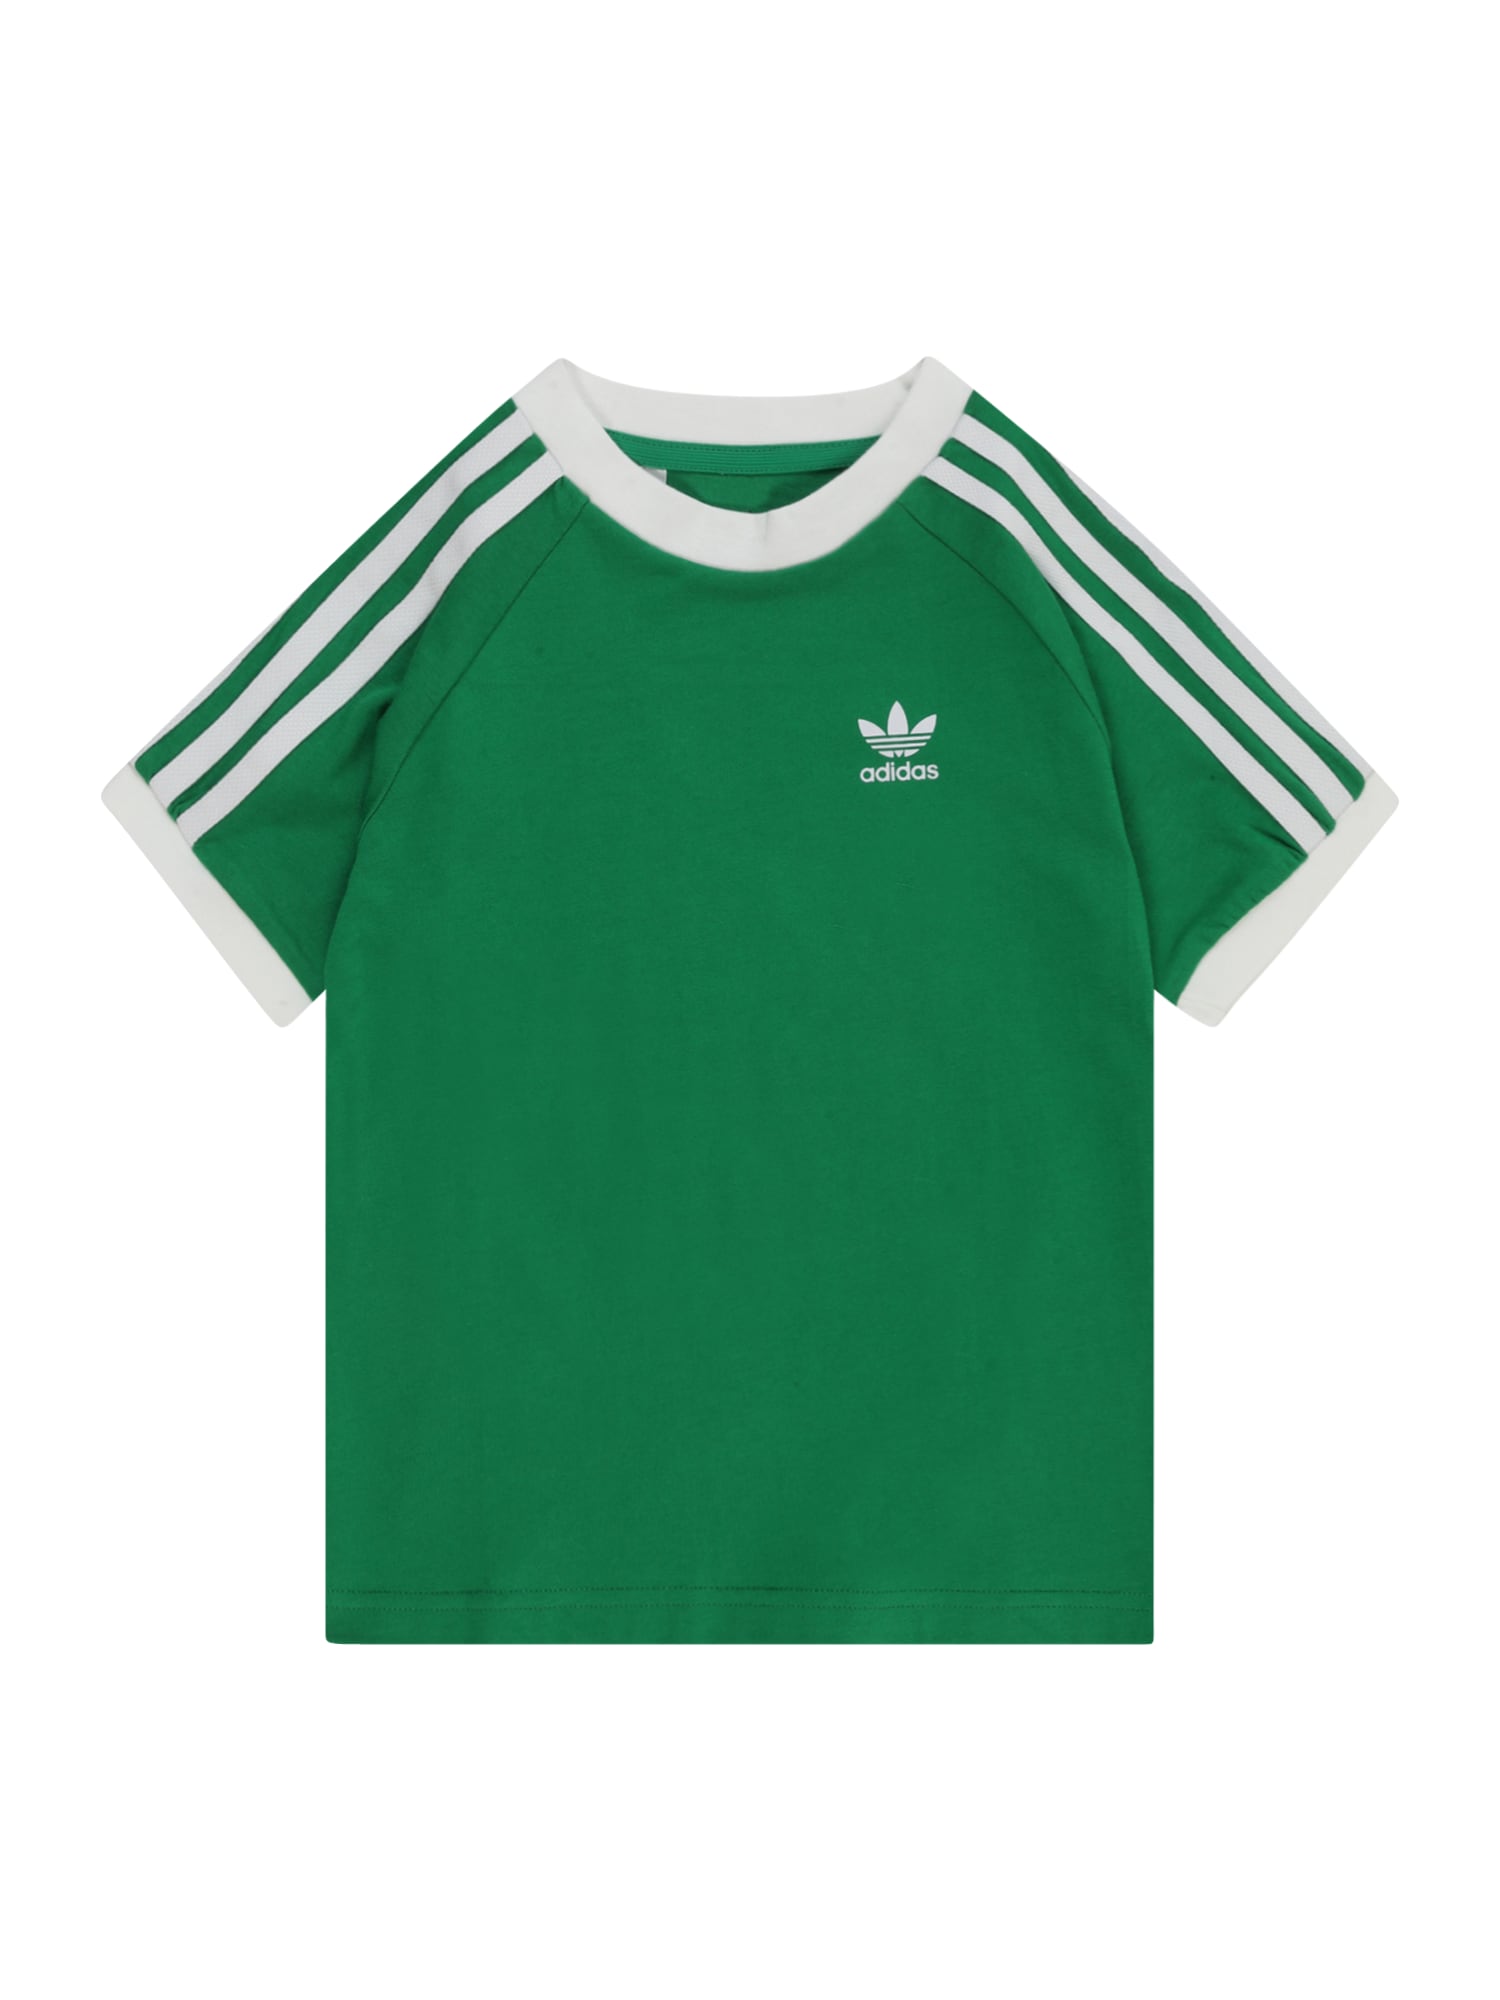 ADIDAS ORIGINALS Marškinėliai 'Adicolor 3-Stripes' žalia / balta